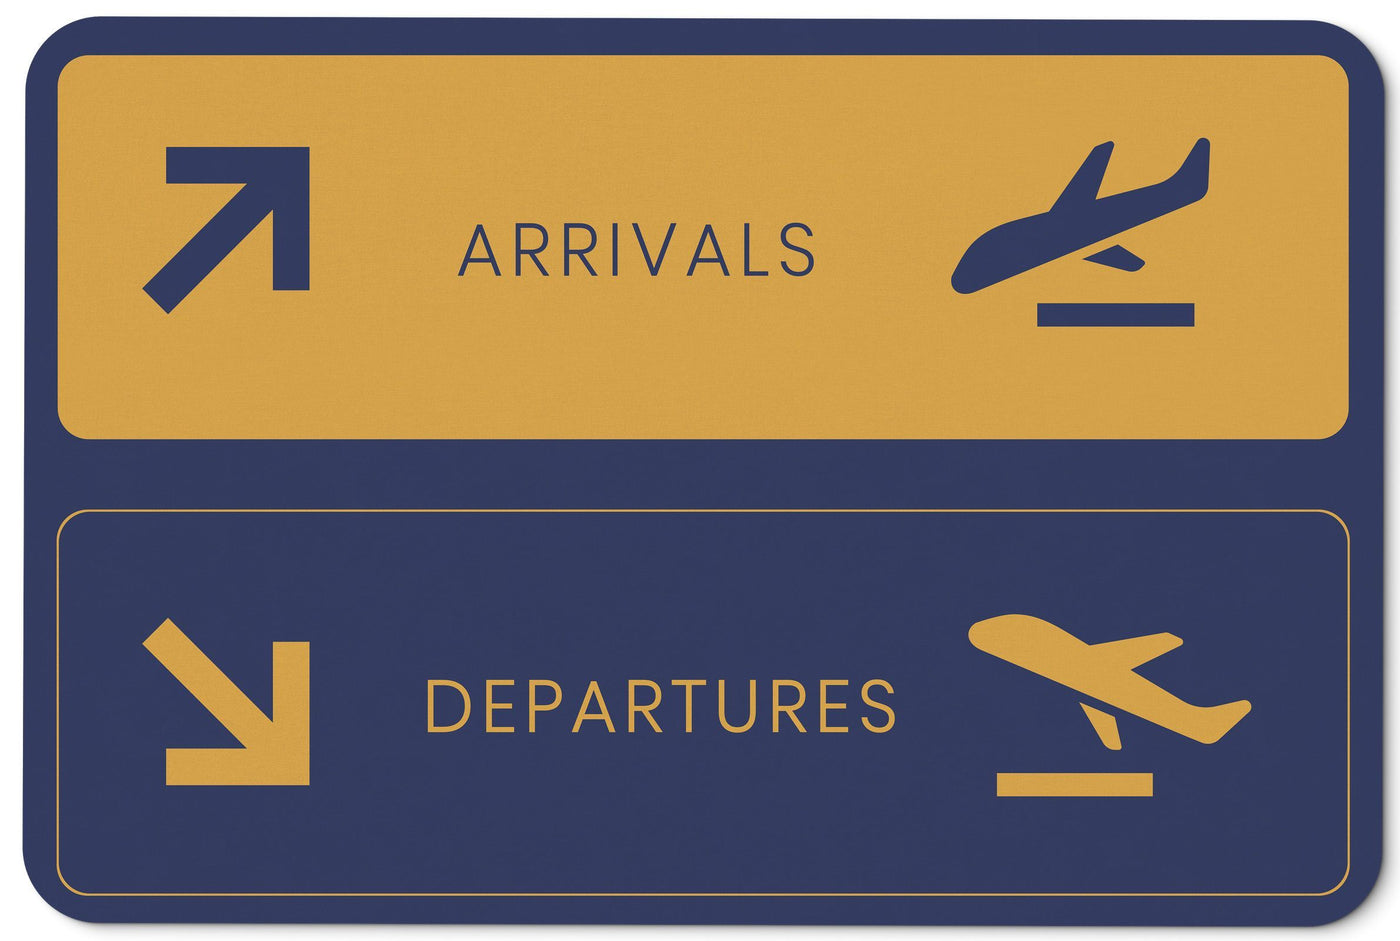 Bild: Fußmatte - Arrivals & Departures Geschenkidee